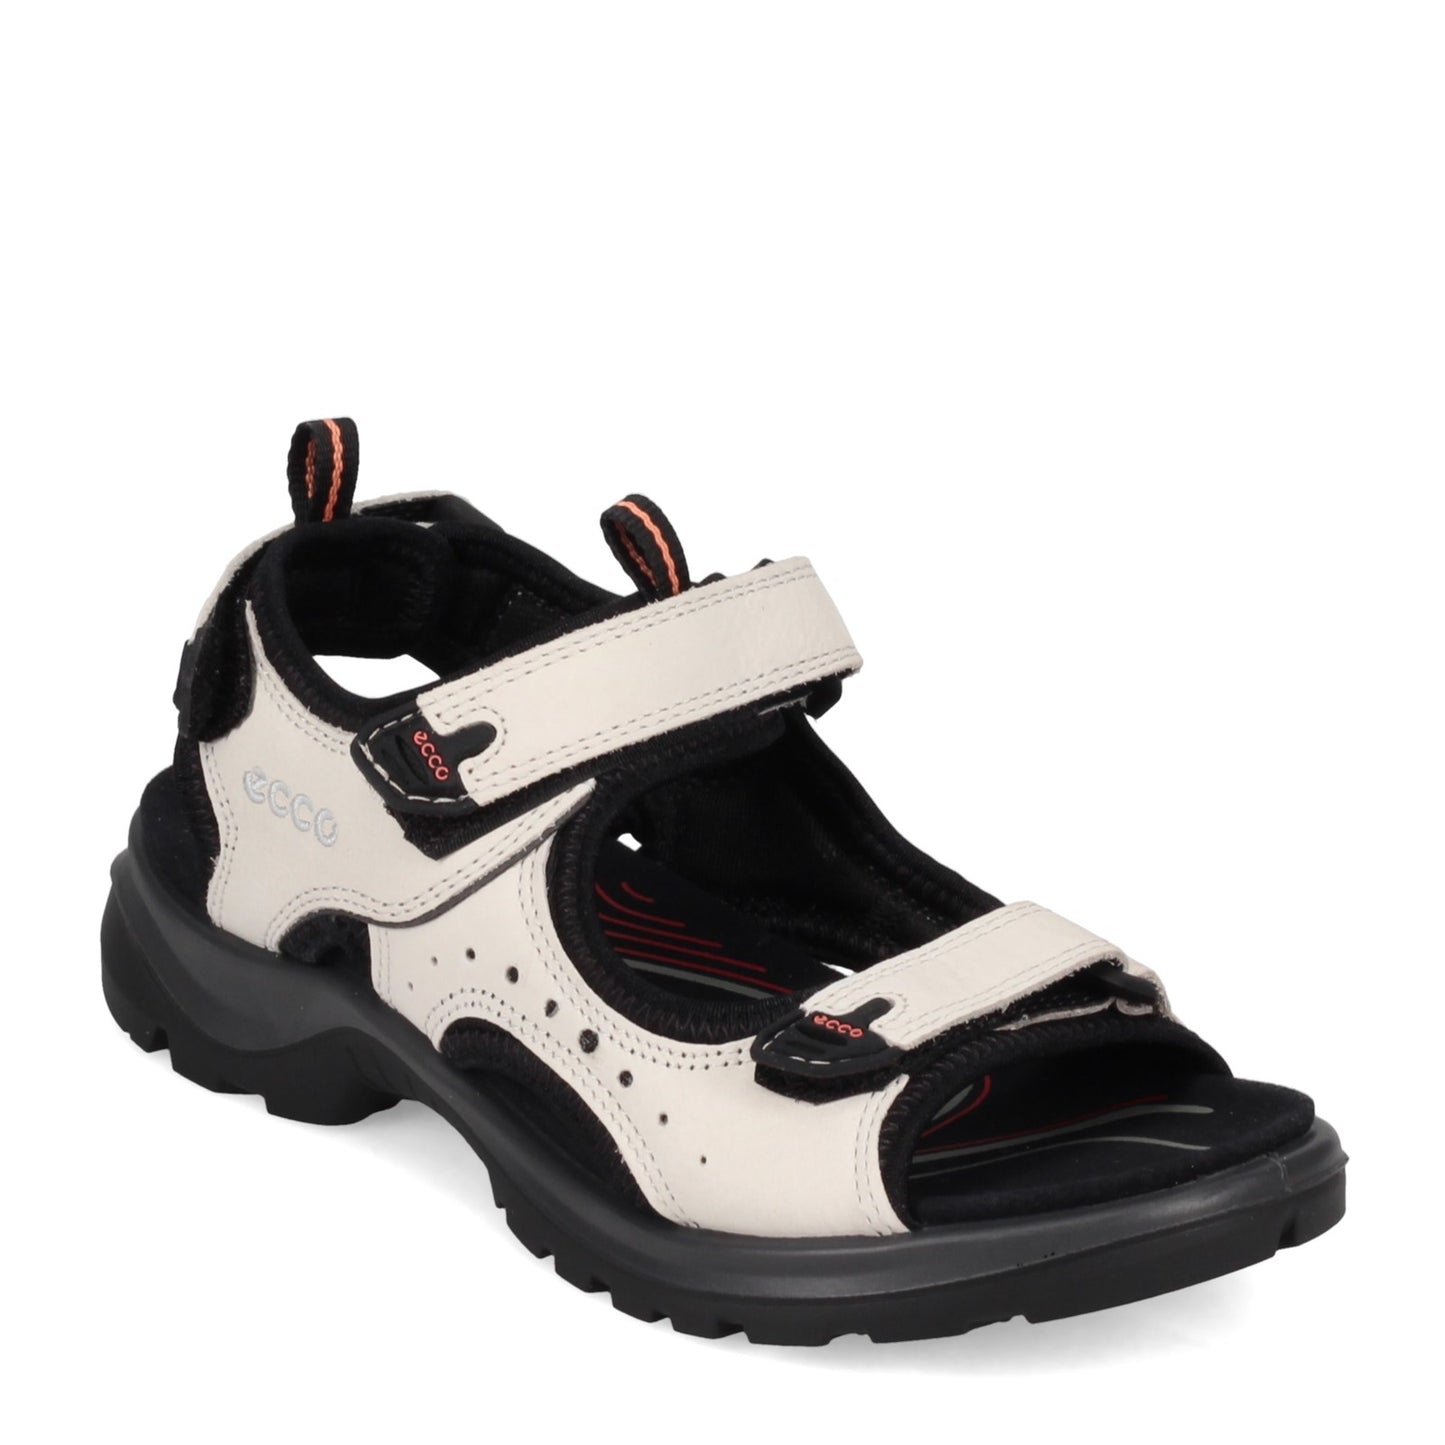 Peltz Shoes  Women's Ecco Offroad Sandal WHITE BLACK 822043-02152